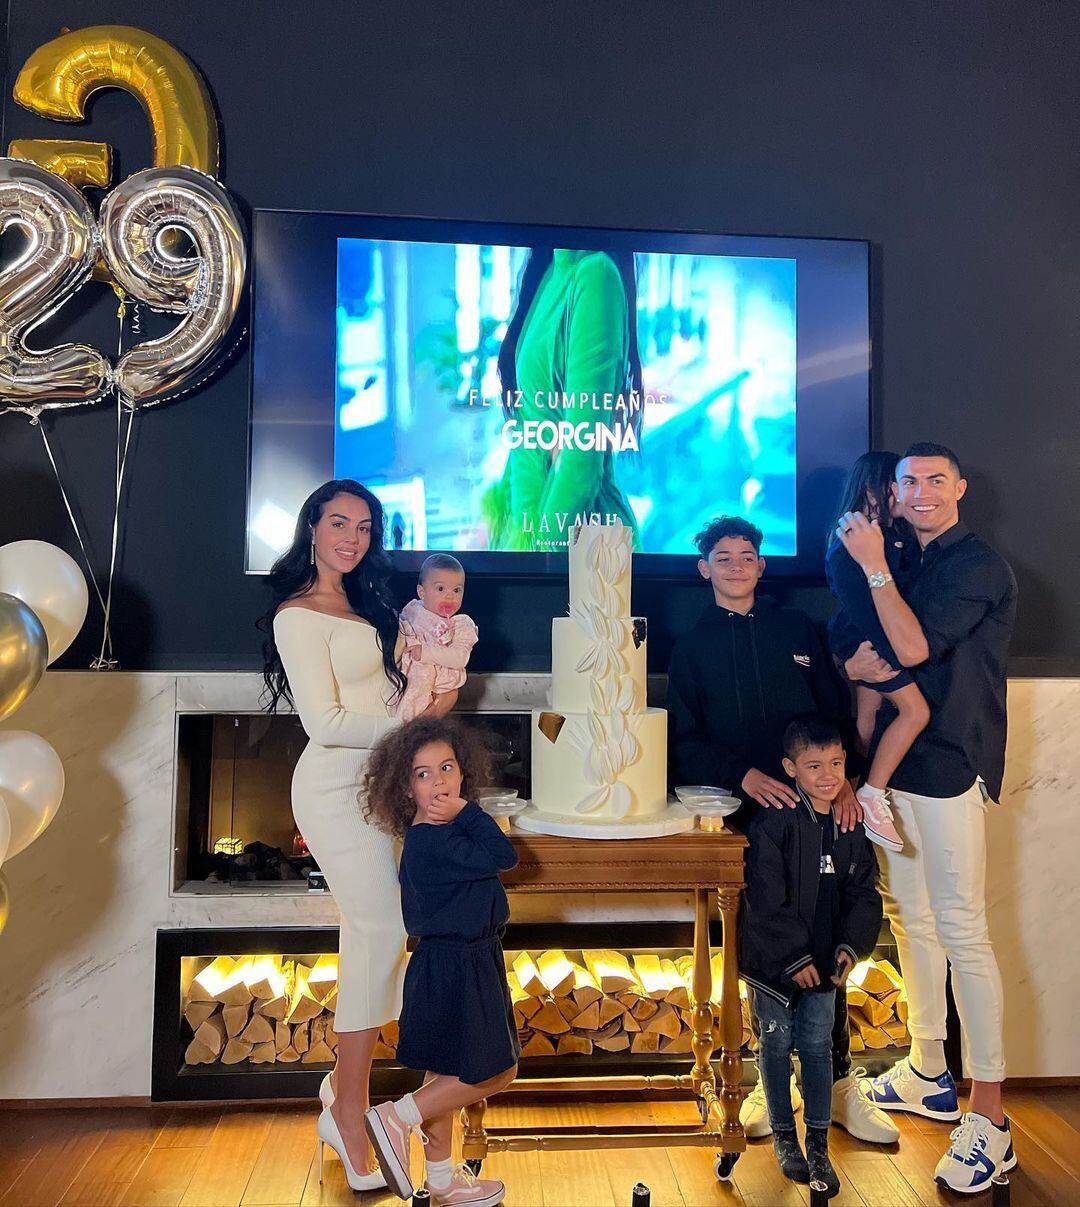 Georgina Rodríguez en familia junto a Cristiano Ronaldo y sus hijos (Foto: Georgina Rodríguez / Instagram)